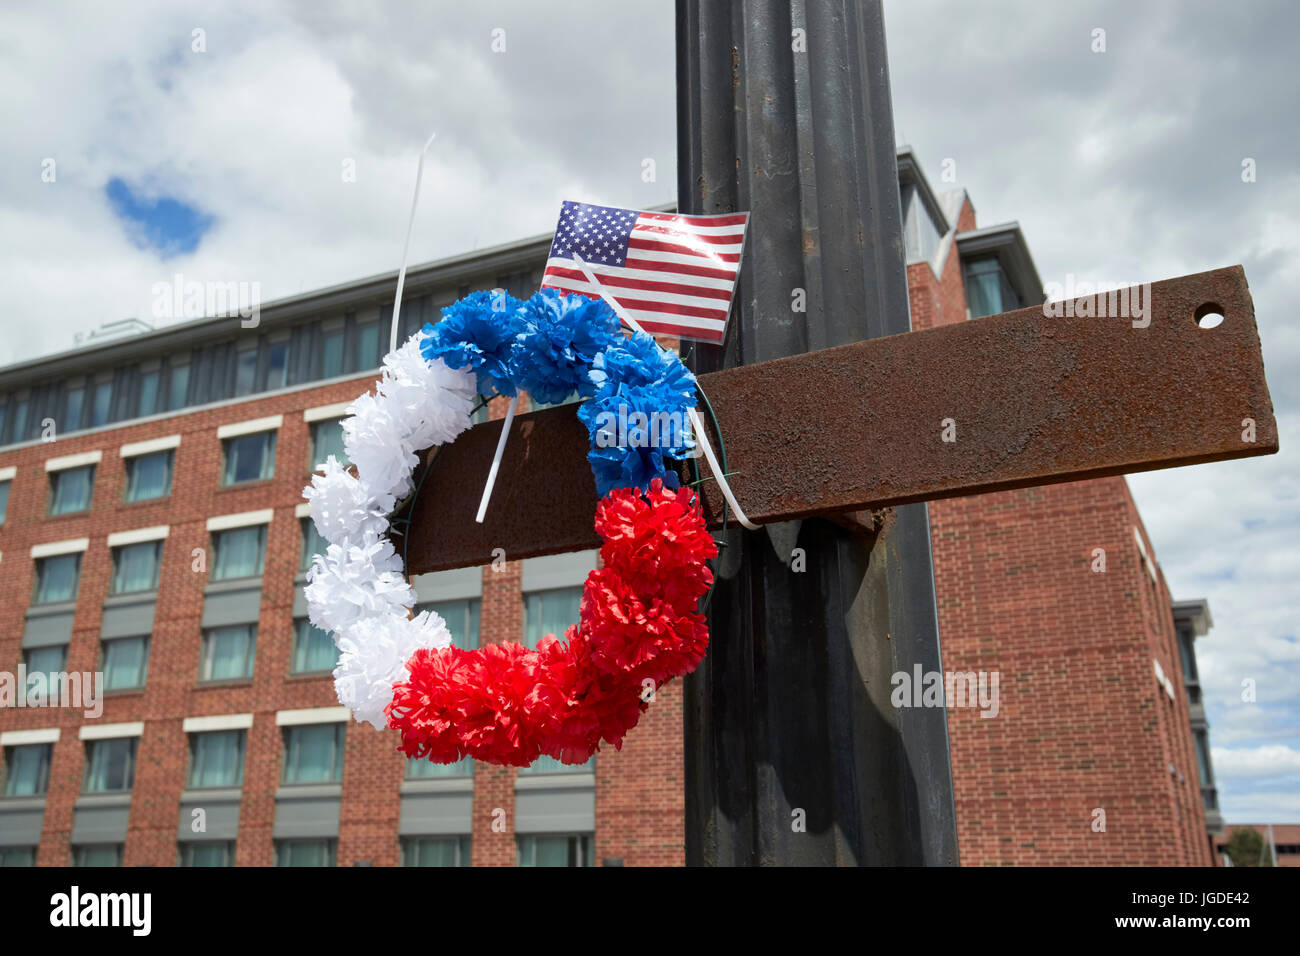 rot weiß und blau Denkmal kreisförmigen Kranz und uns Flagge Denkmal für Feuerwehrmann Lt Steve Minehan am Ort der Lager Feuer Boston USA Stockfoto